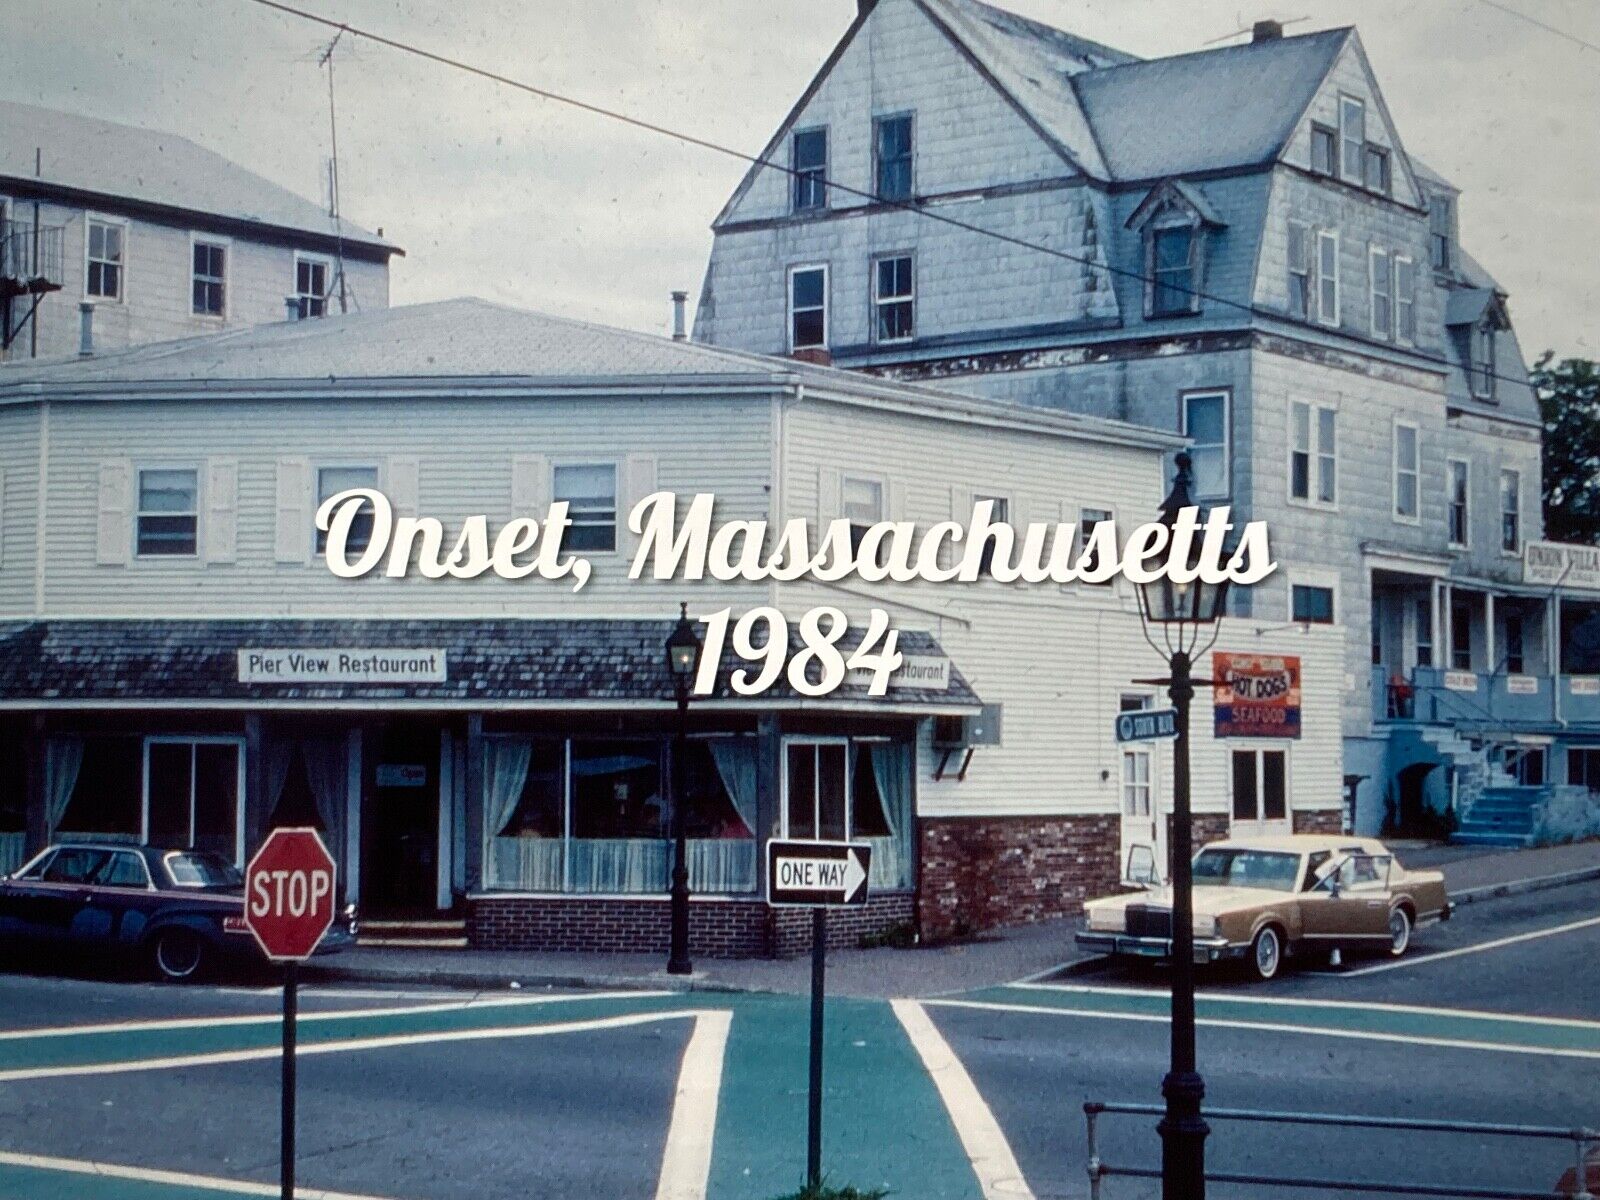 35mm slide Onset, Massachusetts - 1984